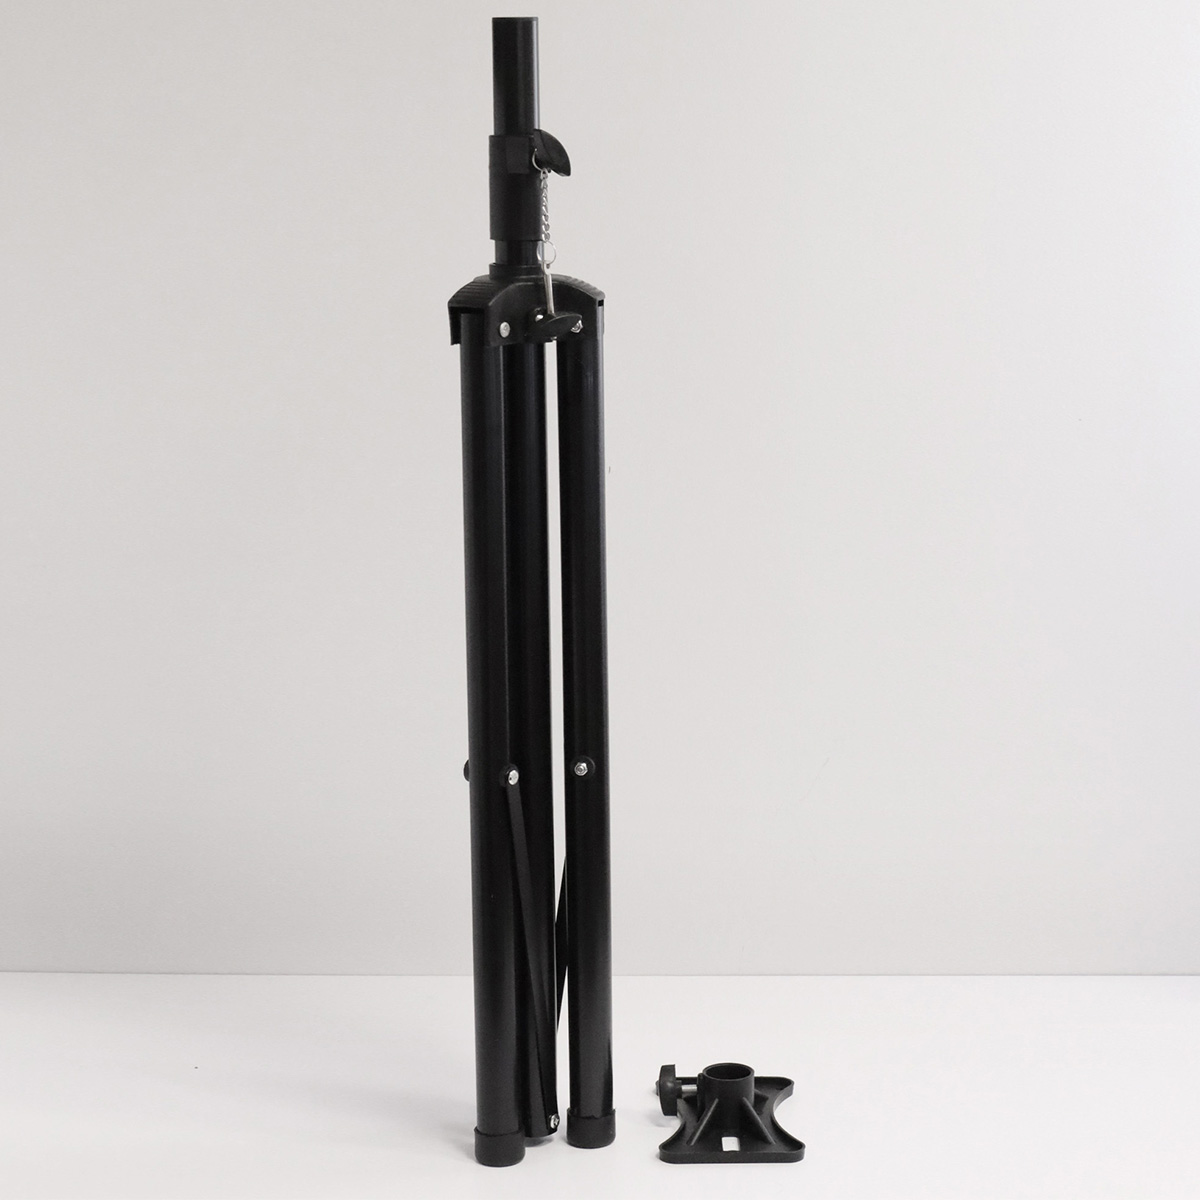 Штатив, стойка профессиональная для аудиоколонки, speaker stand, с площадкой, регулировка высоты 90 - 180 см, цвет черный